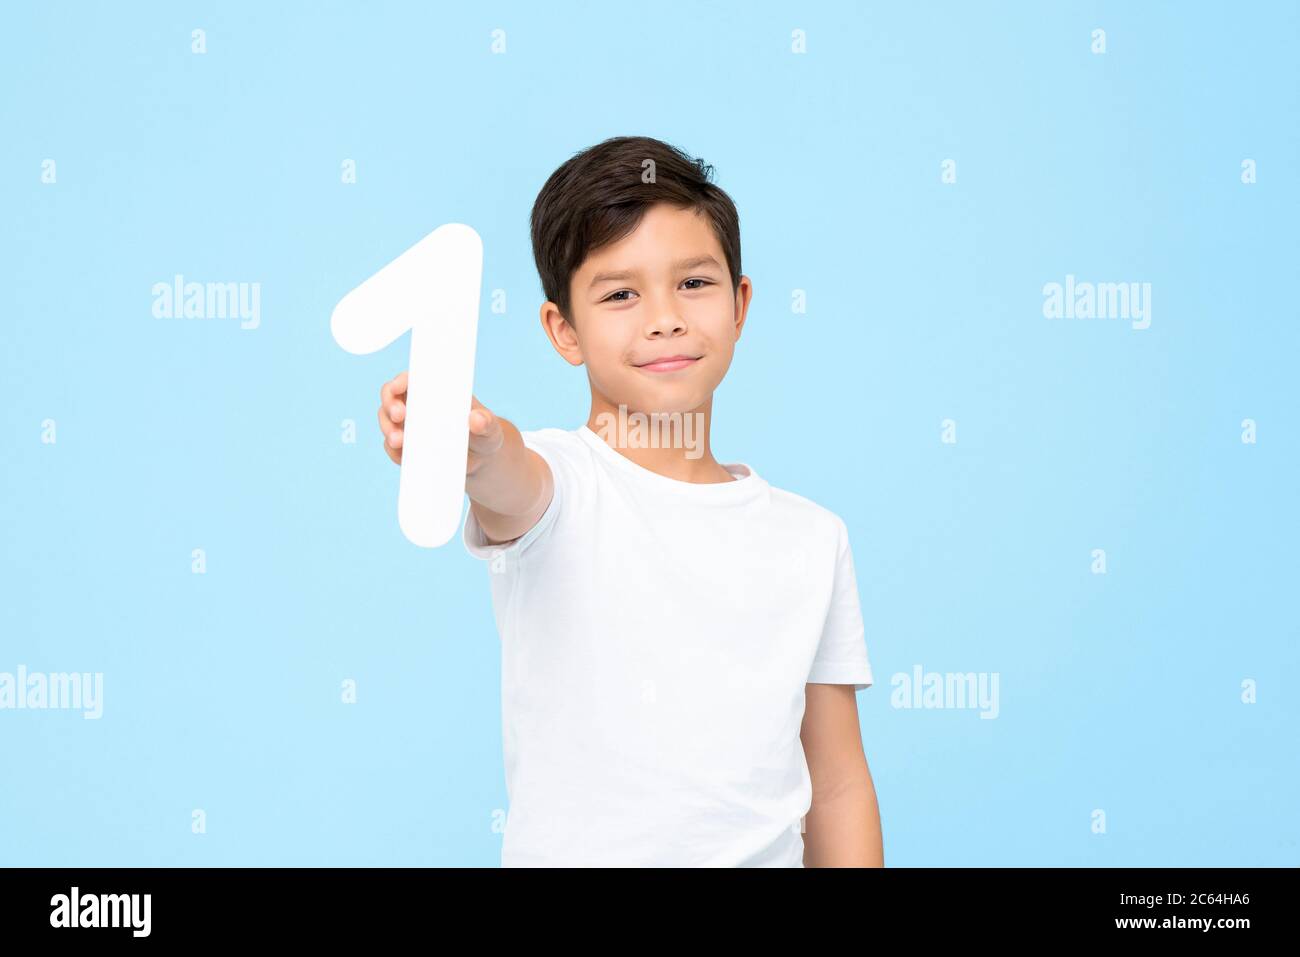 Portrait d'un jeune garçon asiatique souriant tenant et montrant la première découpe dans un studio isolé sur fond bleu pour le concept éducatif Banque D'Images